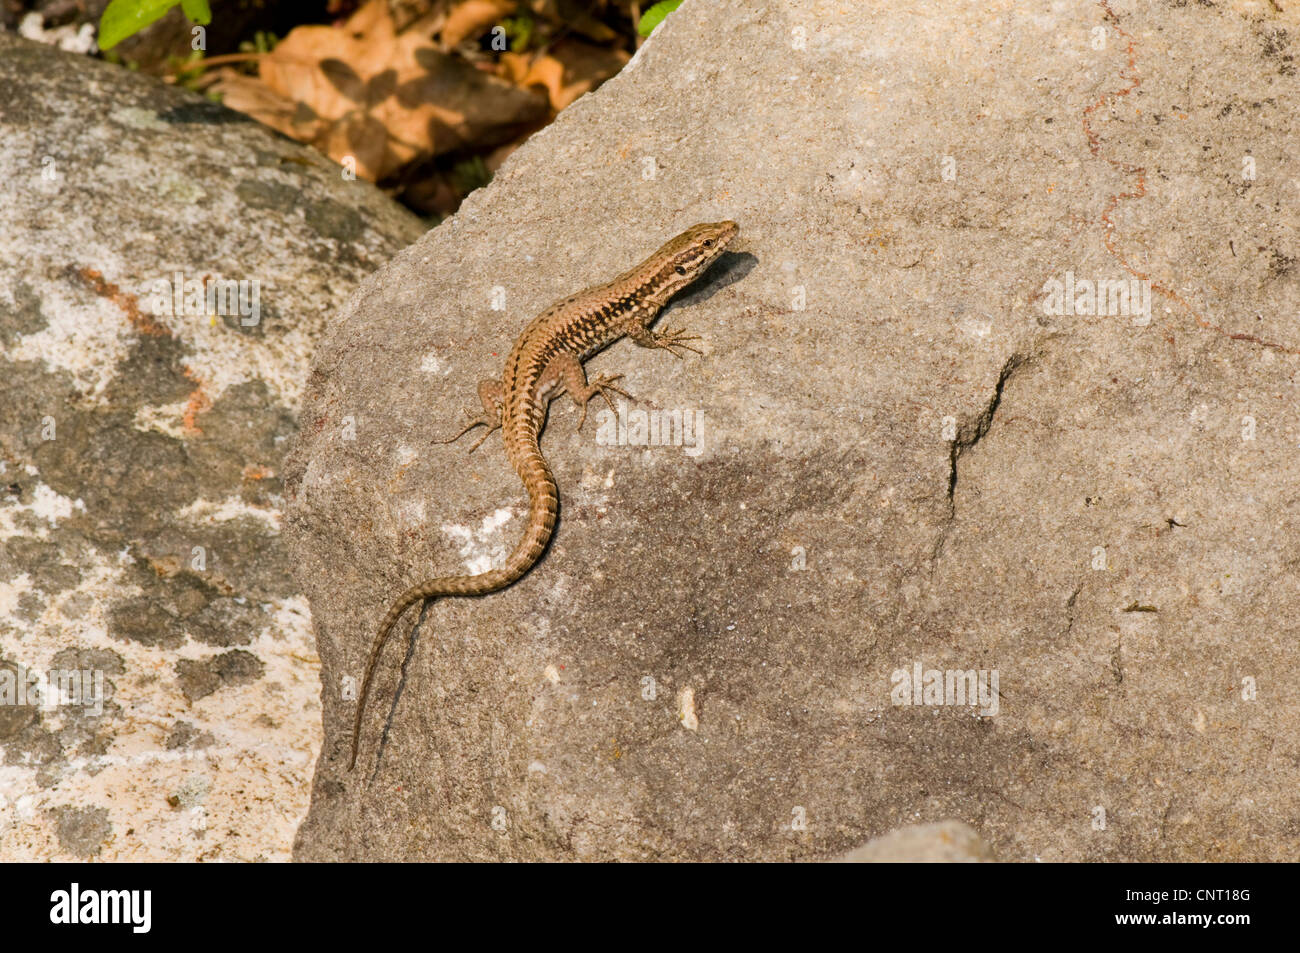 common wall lizard (Lacerta muralis, Podarcis muralis), female, Switzerland Stock Photo